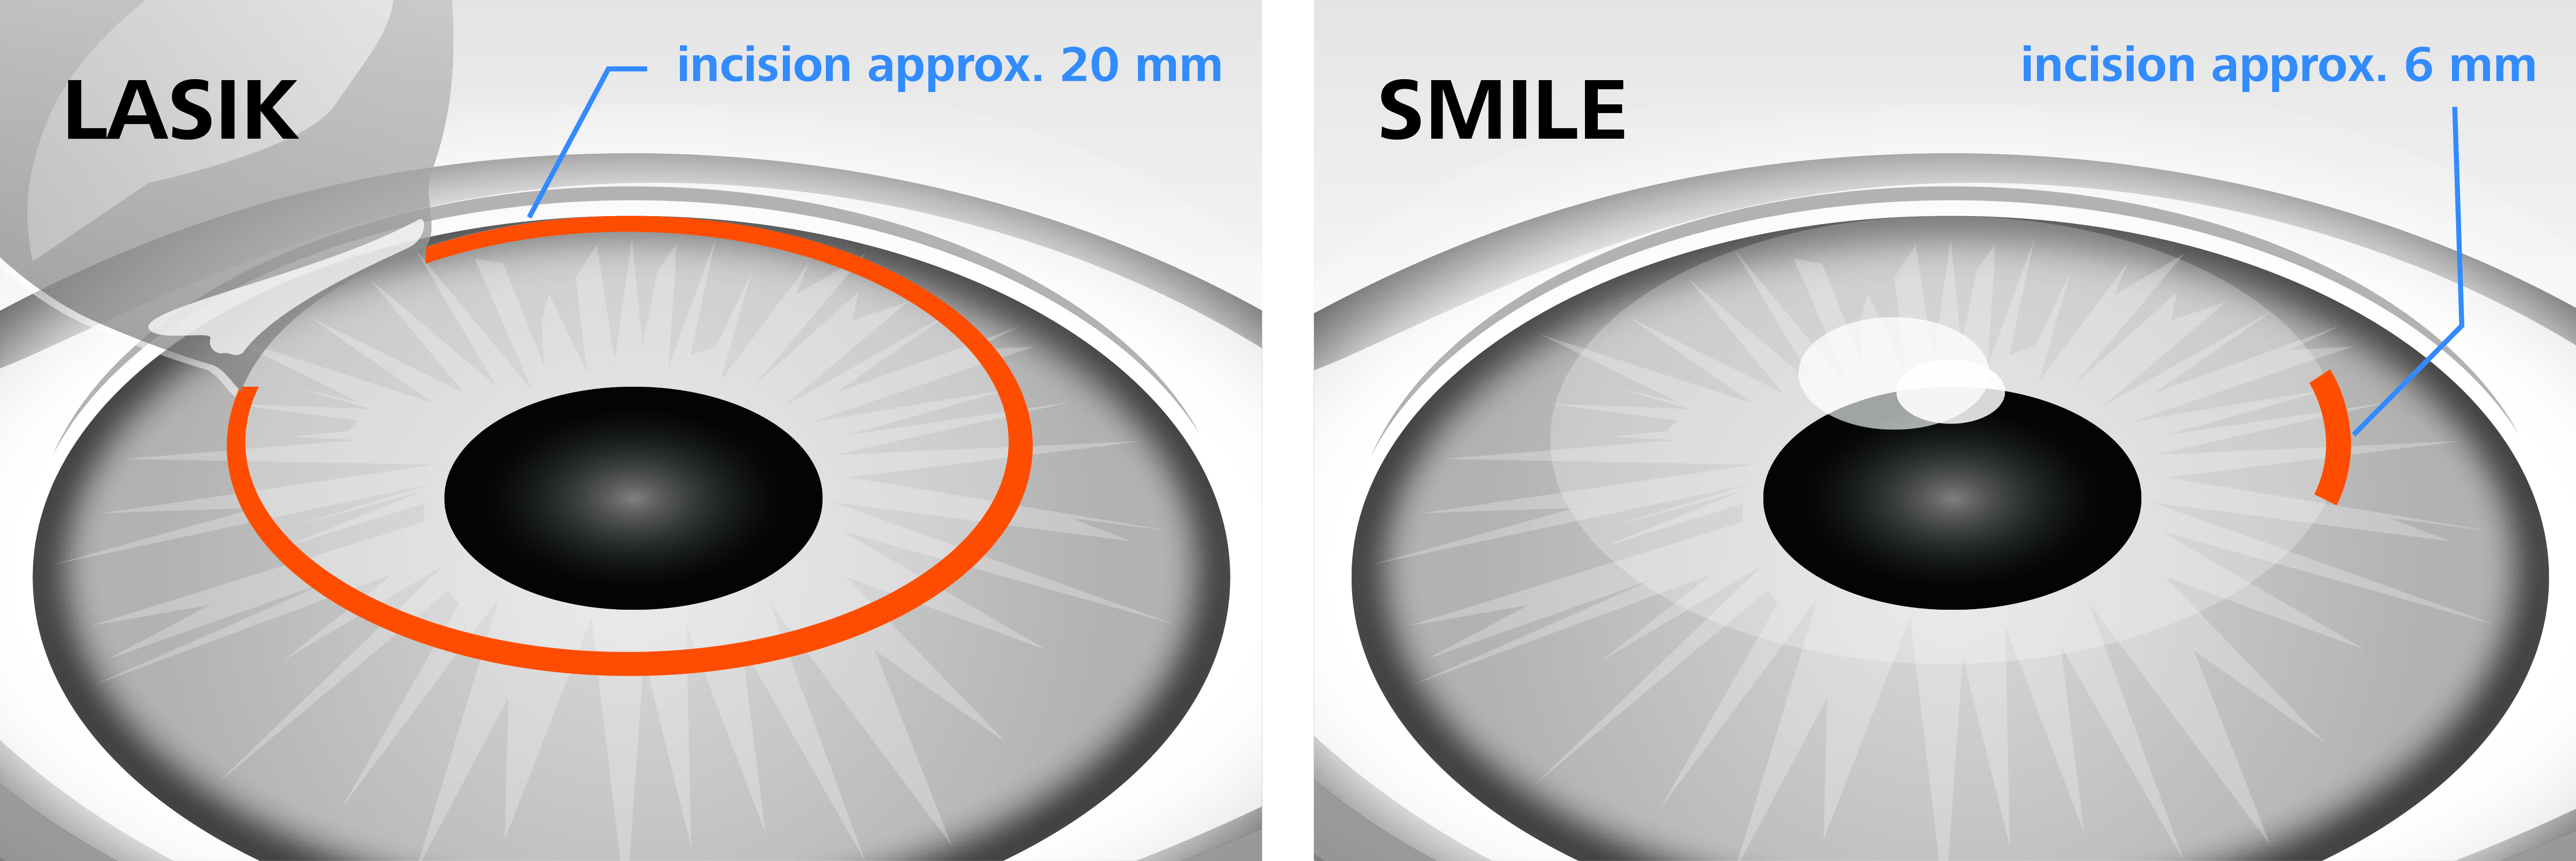 Зрение 2 операция. Метод ласик лазерная коррекция. Лазерная коррекция зрения метод Фемто ласик. Операция Femto LASIK И smile. RELEX smile лазерная коррекция зрения.